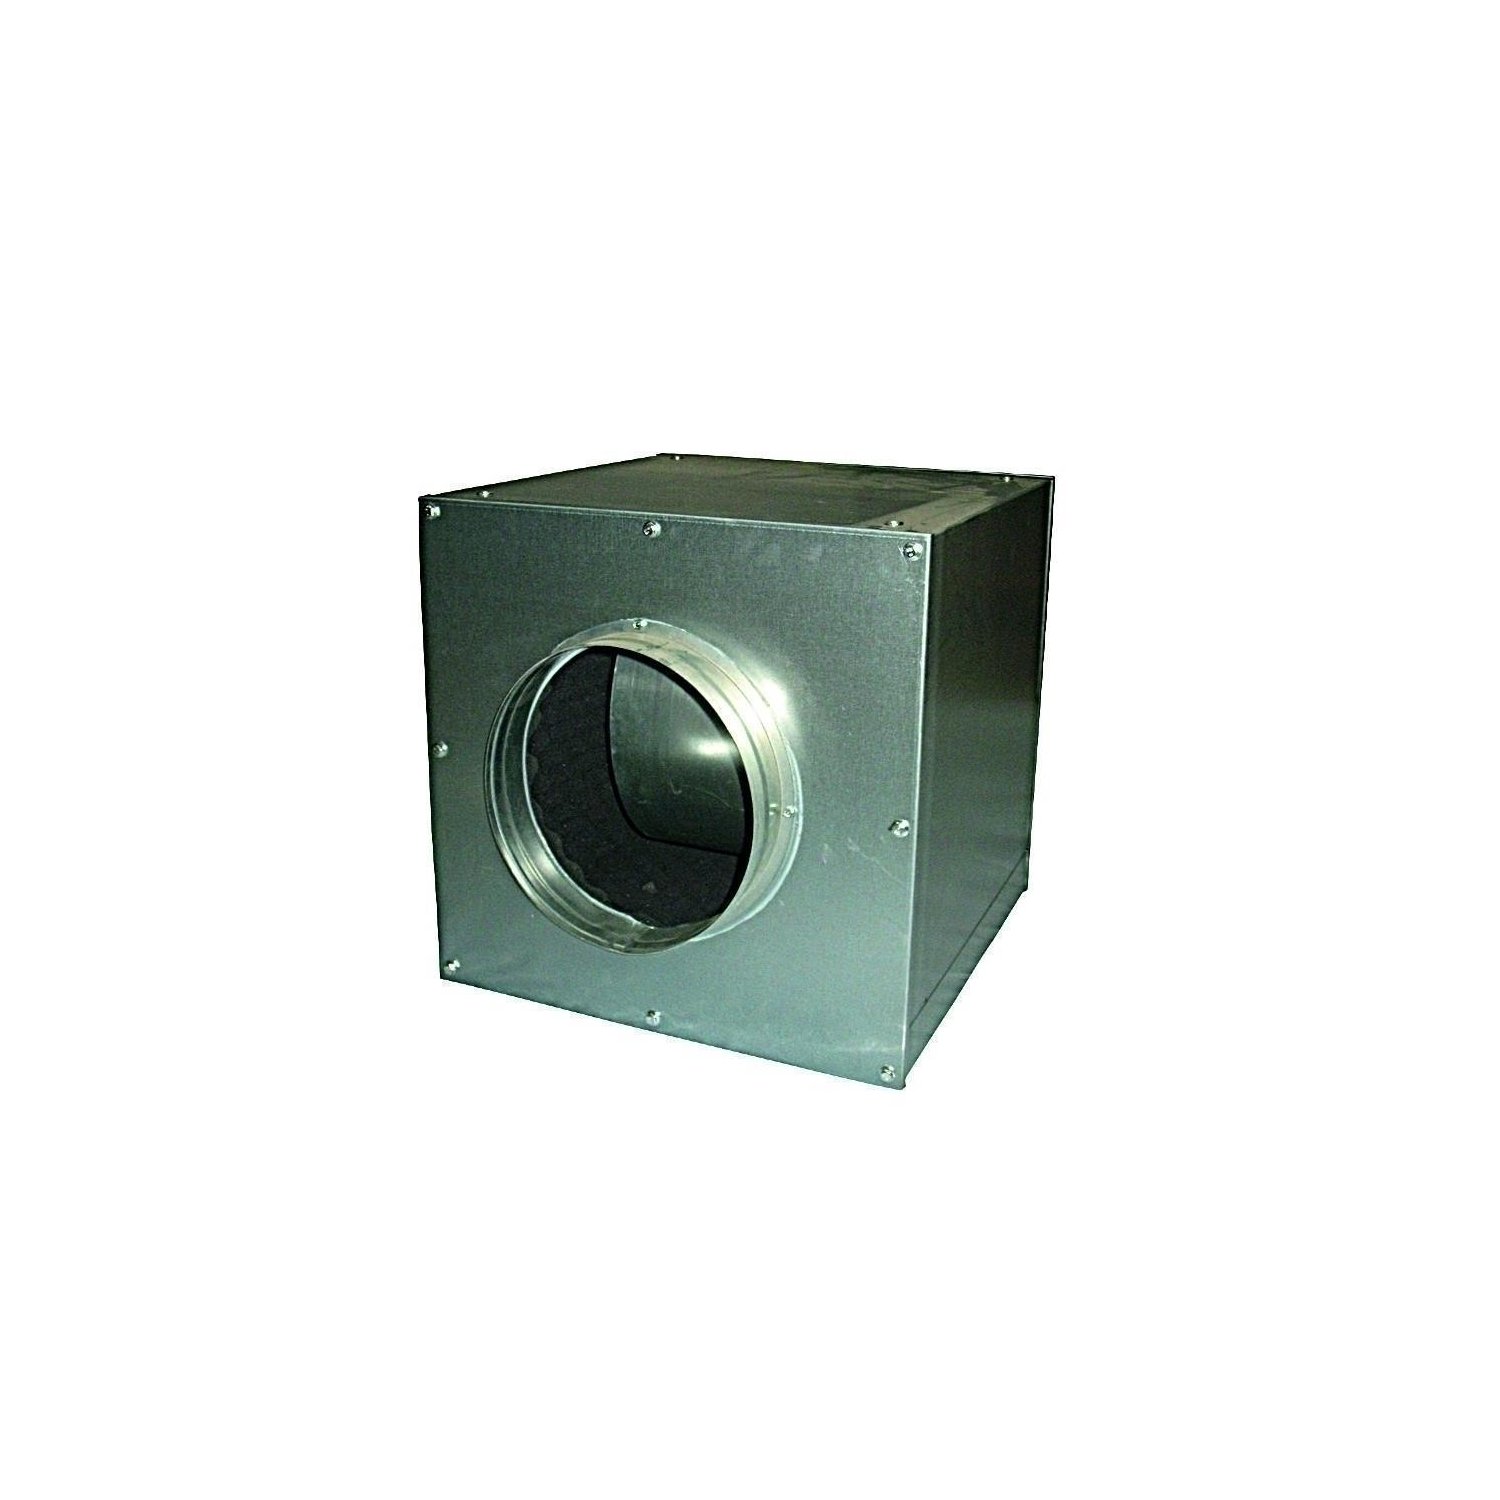 Cultivalley AC Lüfterbox 5000m-h aufgehangen Metall unter Luft & Wasser > Lüftung > Lüfter